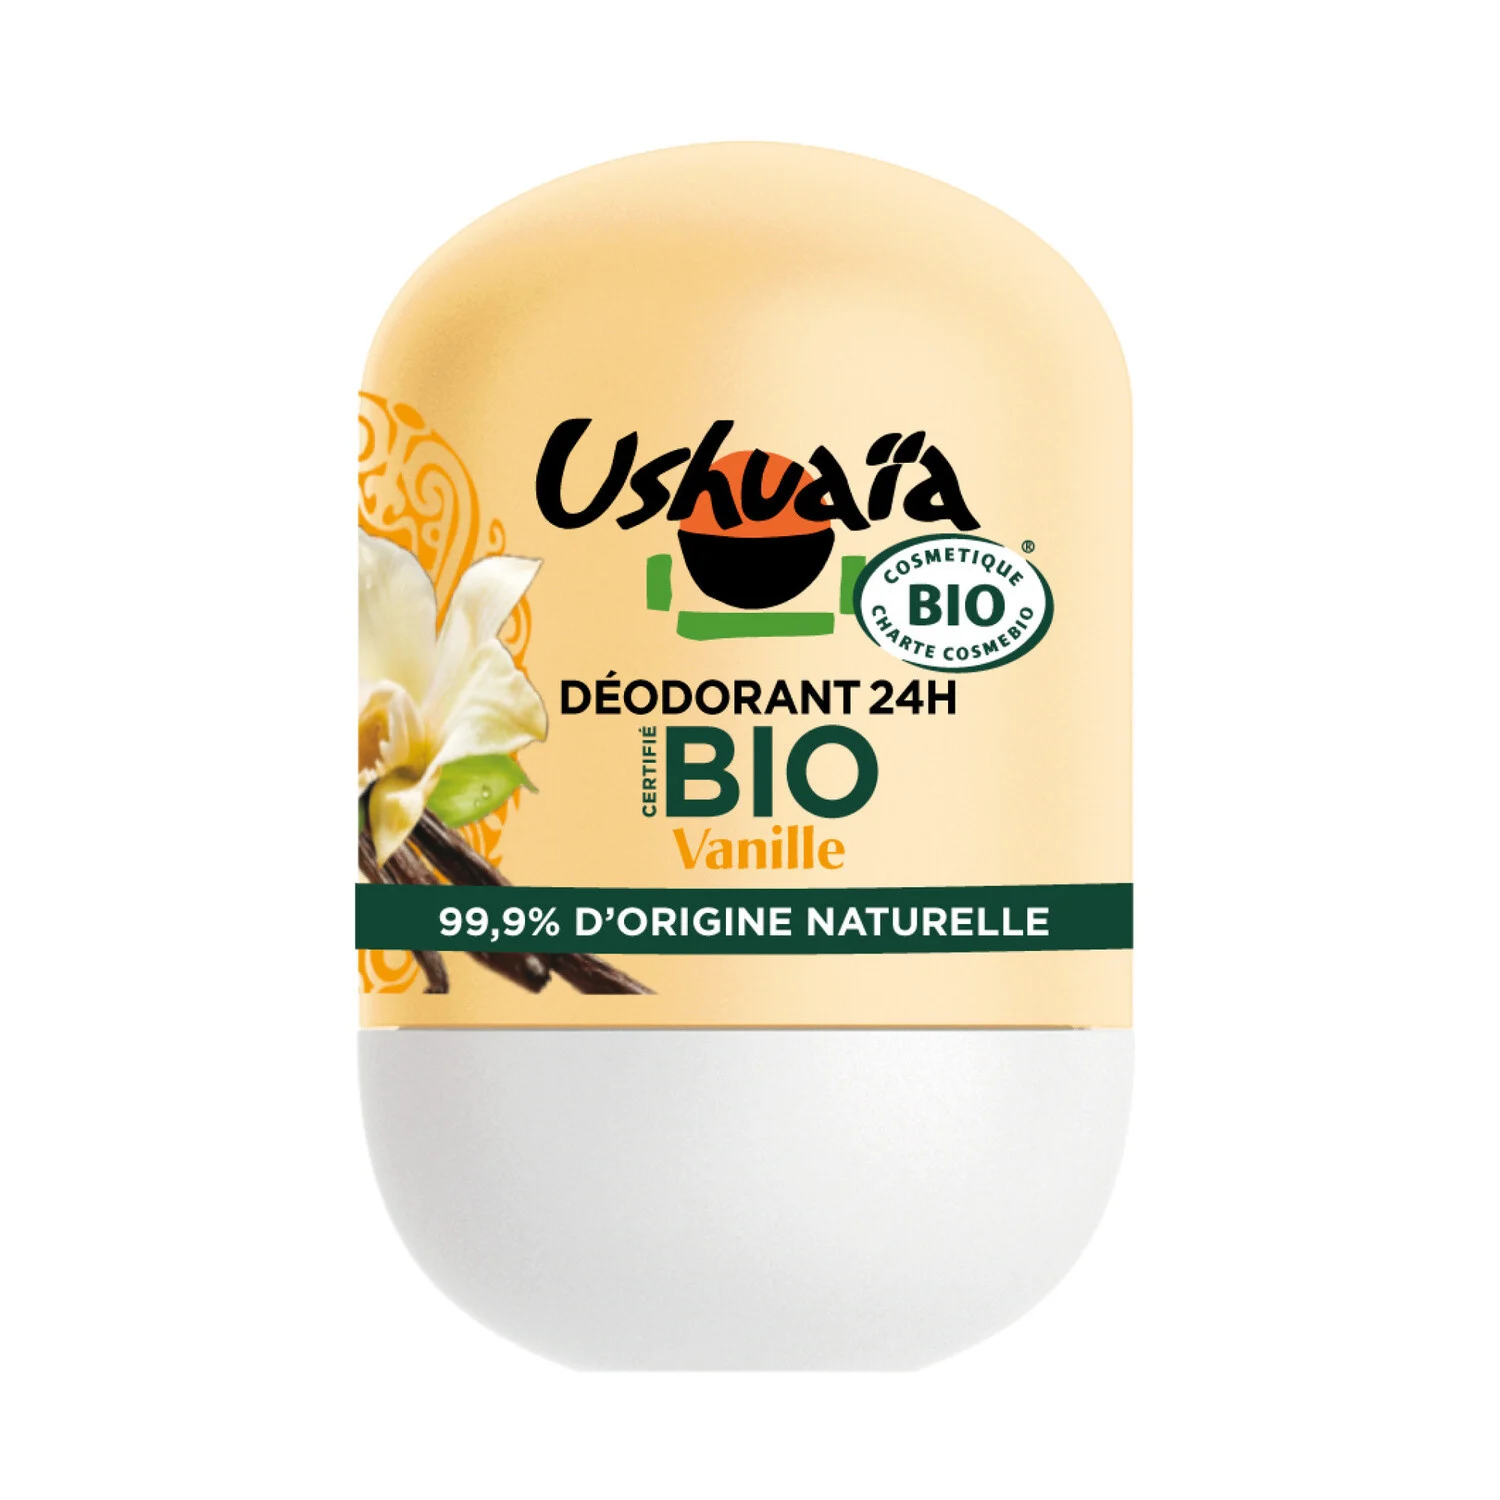 Organic Madagascar Vanilla Deodorant Roll-On Ushuaia 50ml